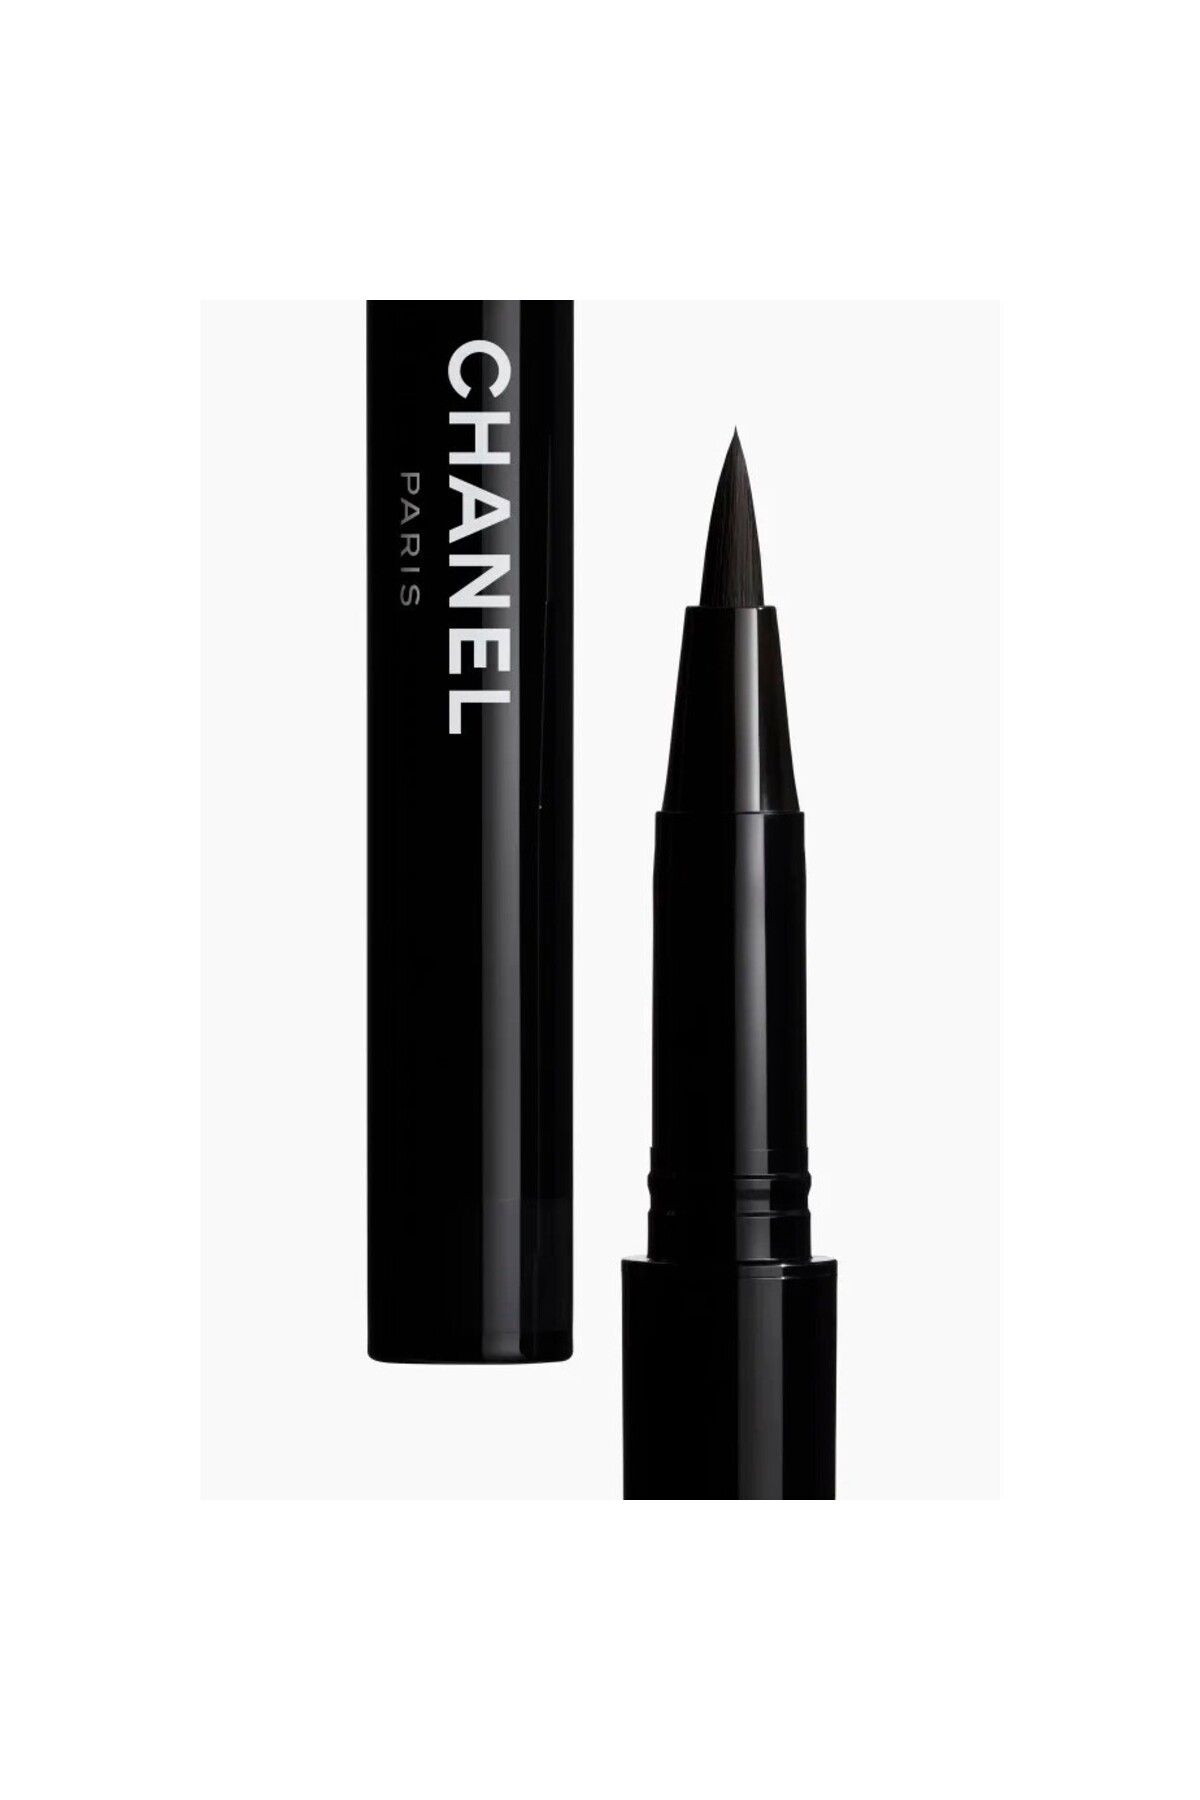 Chanel - BELİRGİN, YOĞUN, SUYA DAYANIKLI EYELINER - SIGNATURE DE CHANEL - 10 NOIR